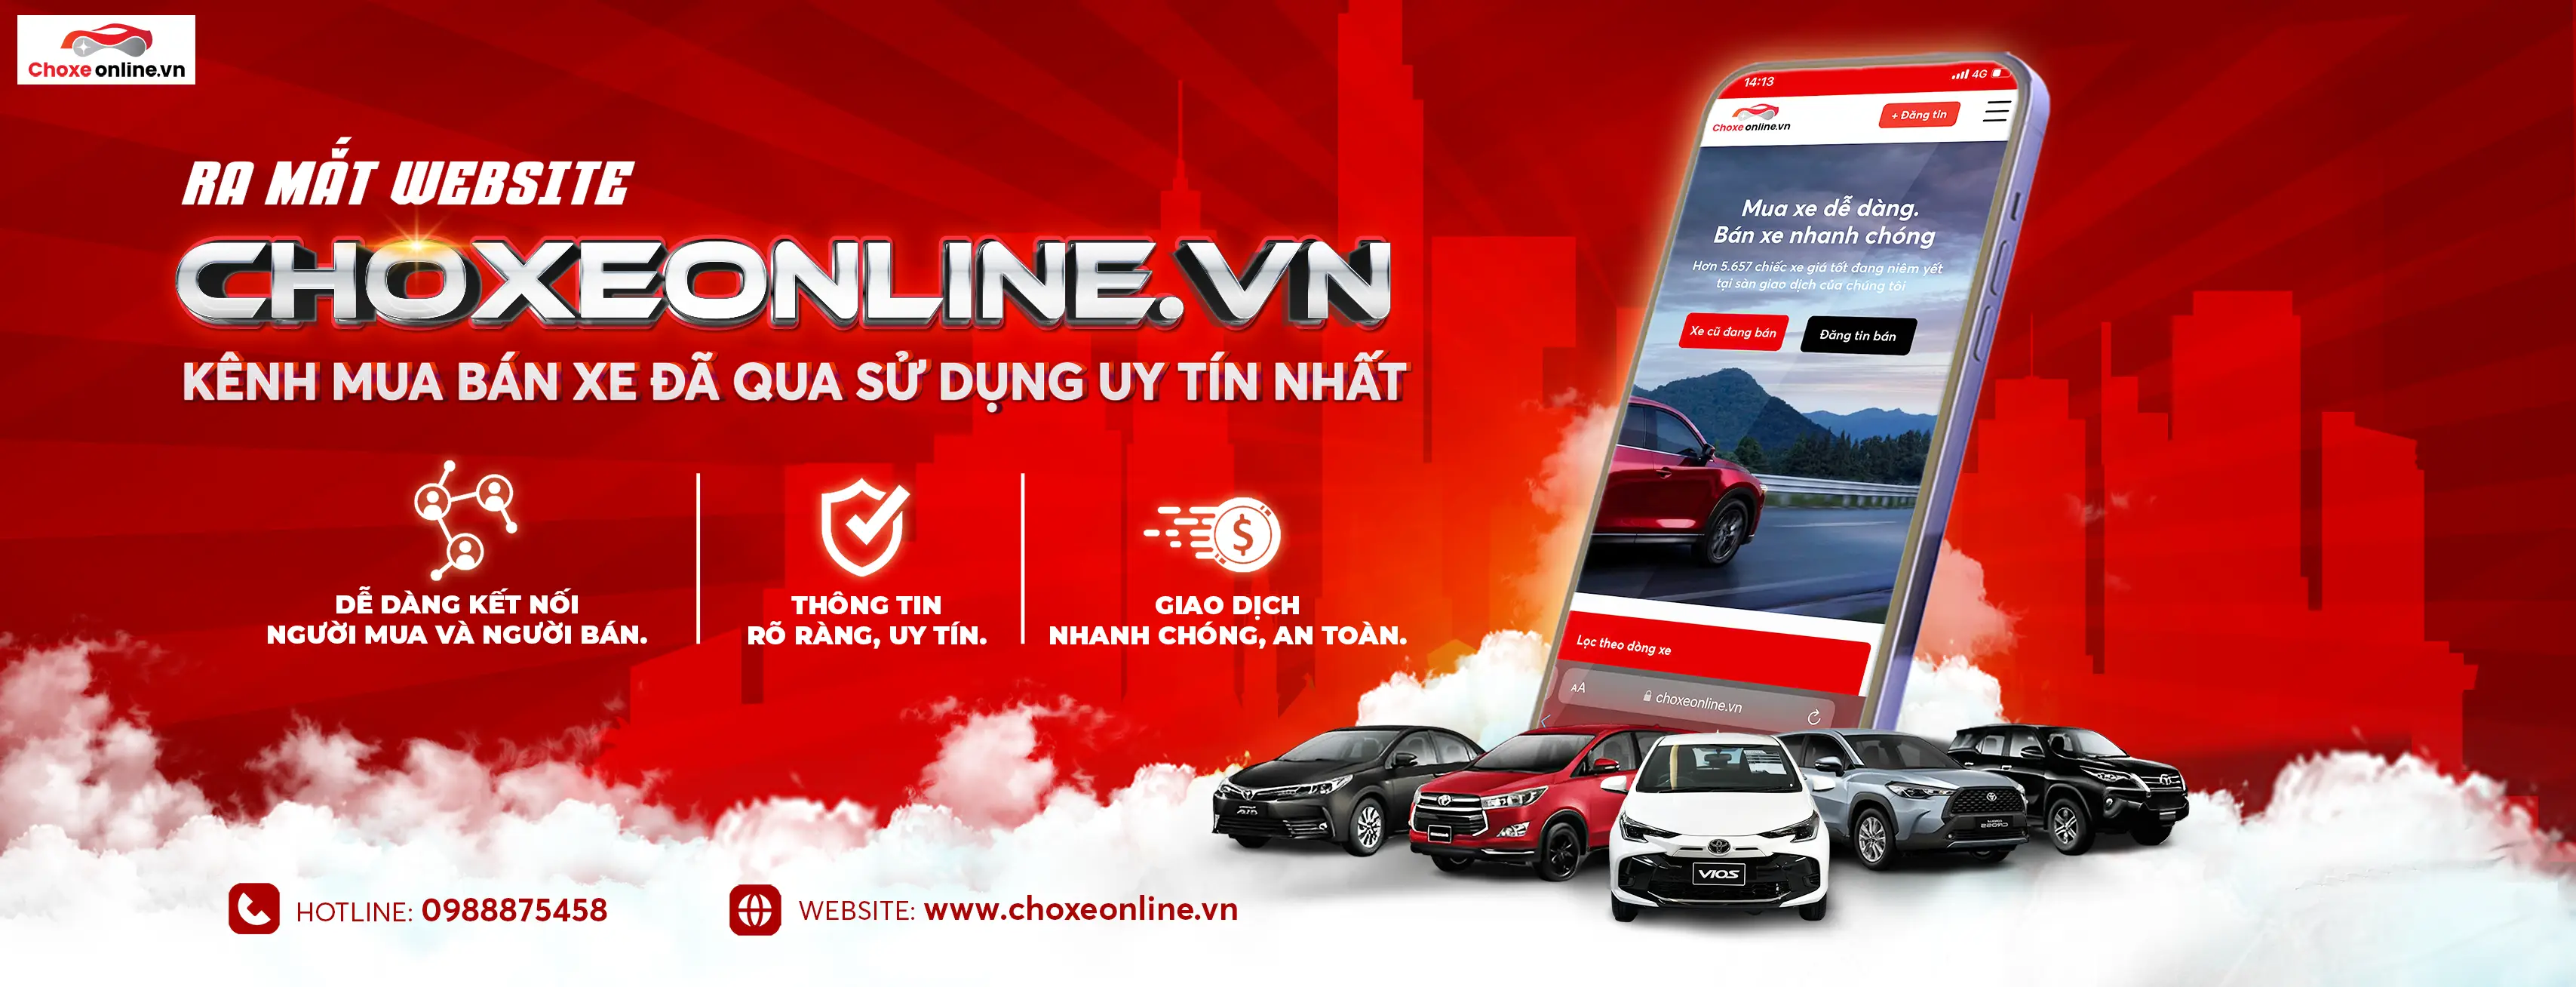 Ra mắt Choxeonline.vn - Kênh mua bán xe đã qua sử dụng uy tín nhất!